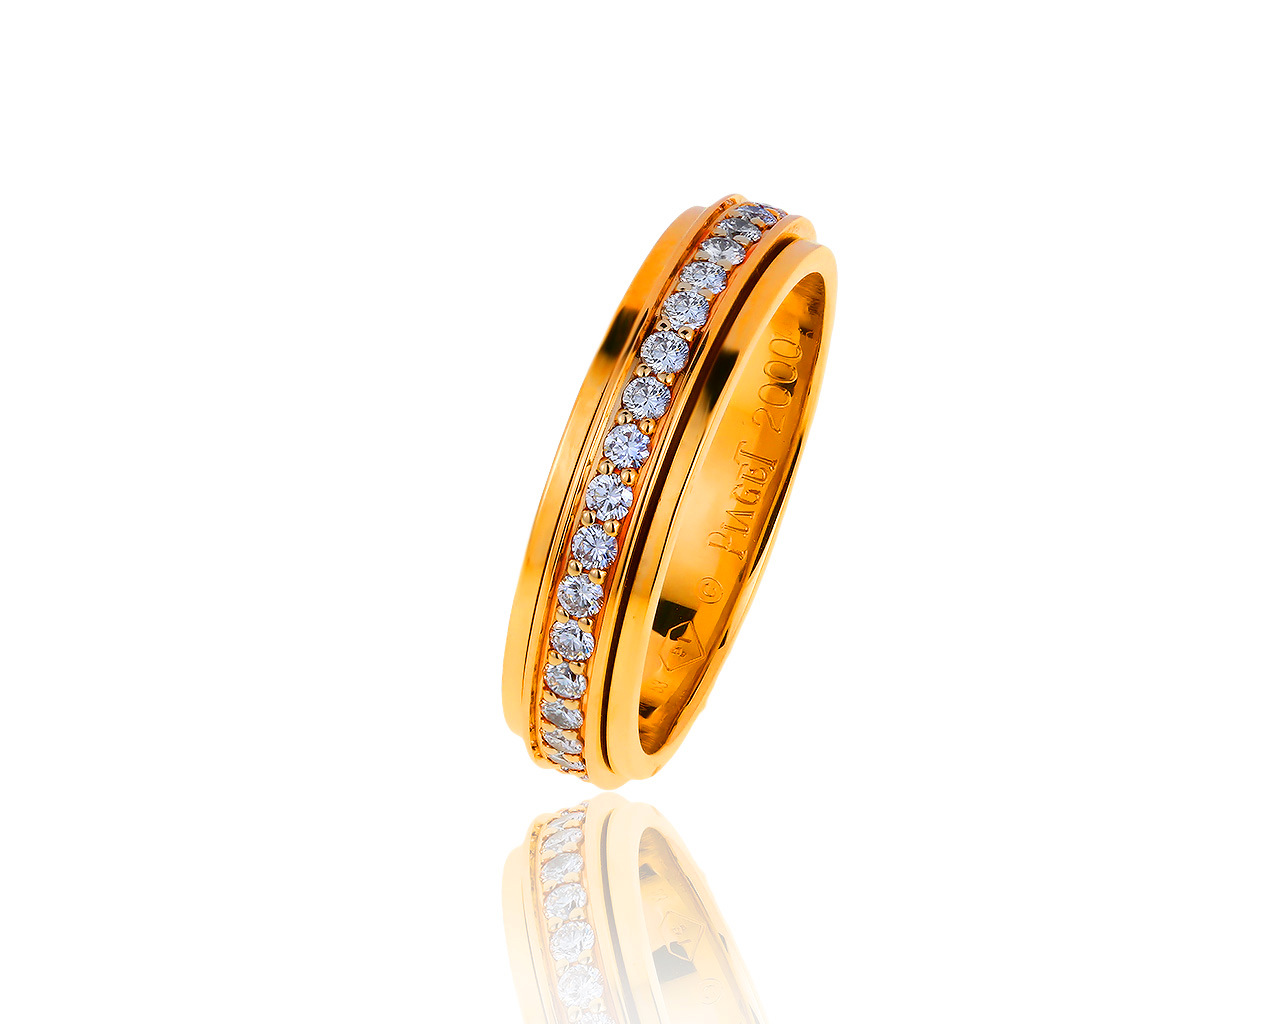 Оригинальное золотое кольцо с бриллиантами 0.55ct Piaget Possession